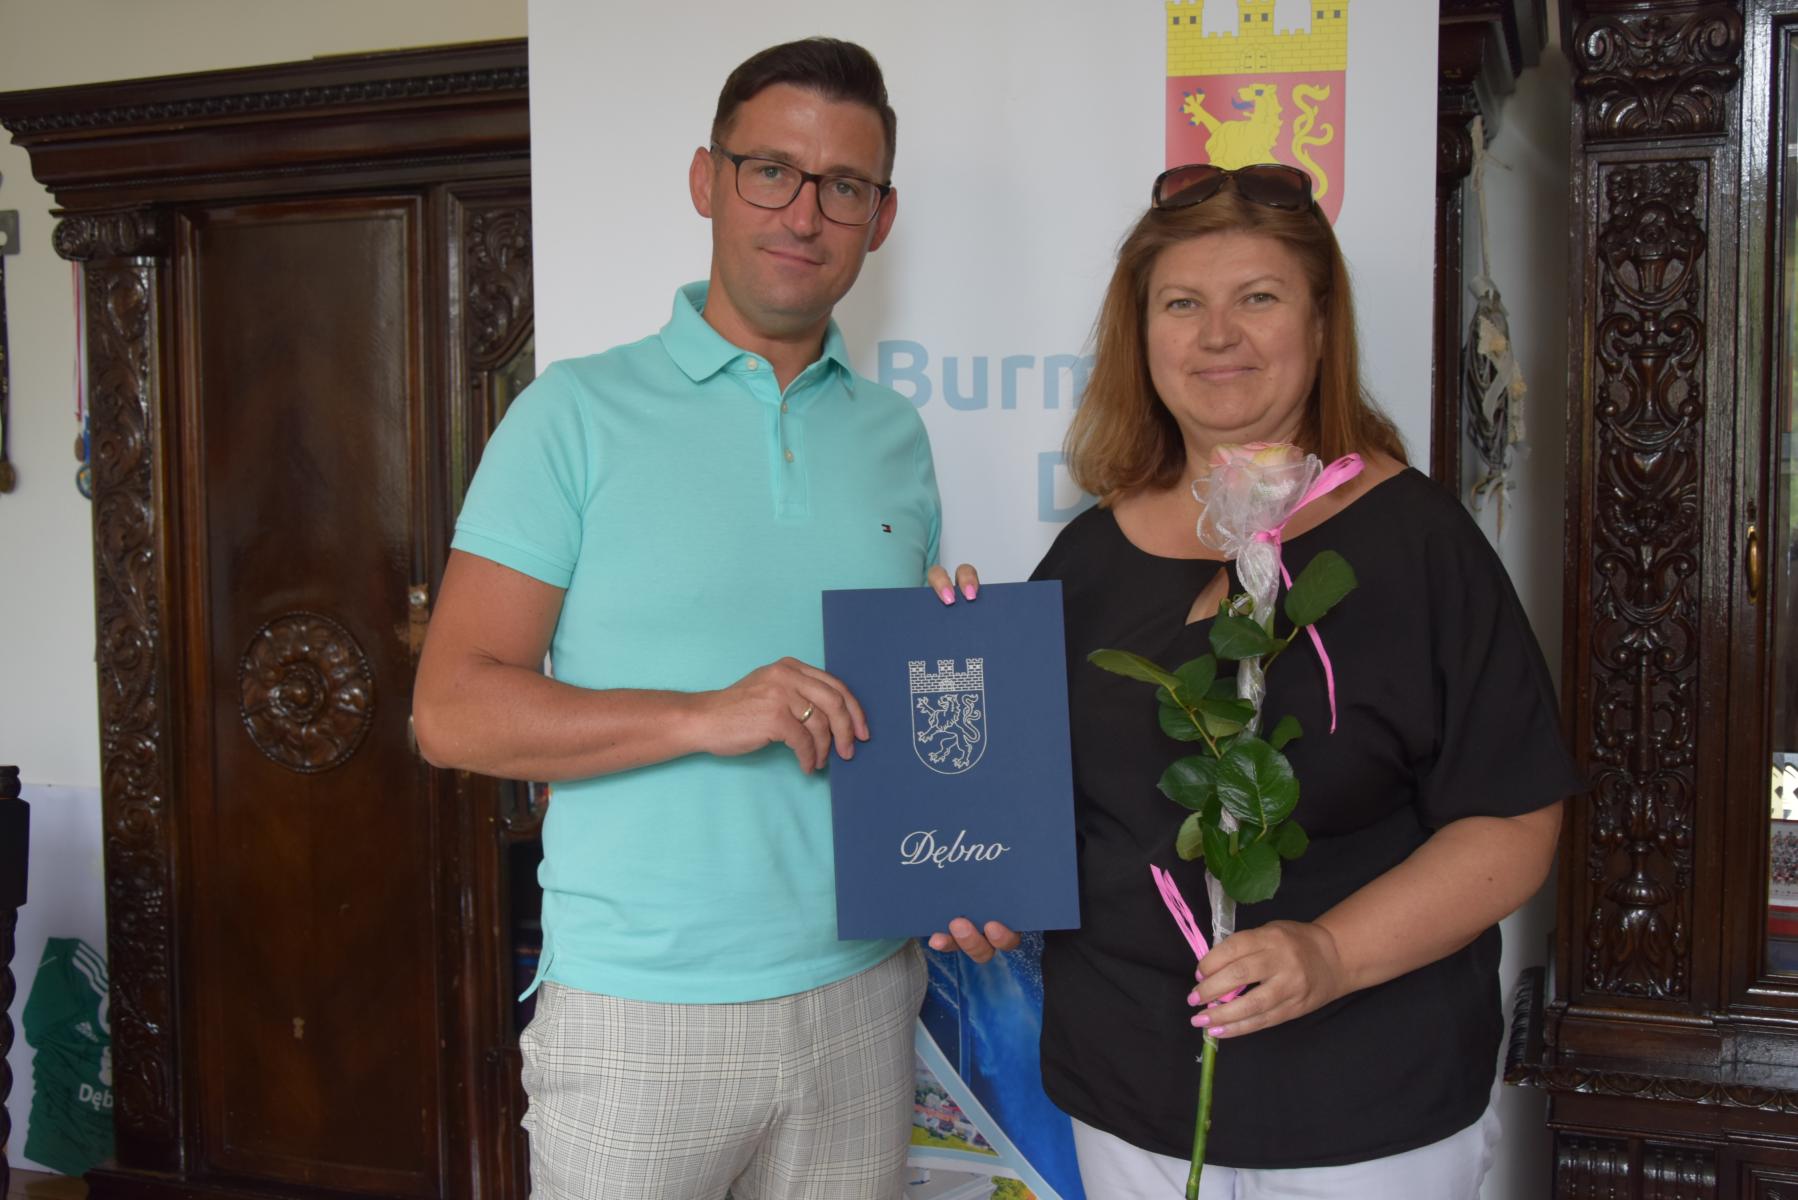 Od lewej burmistrz Dębna, dyrektor trzyma kwiat